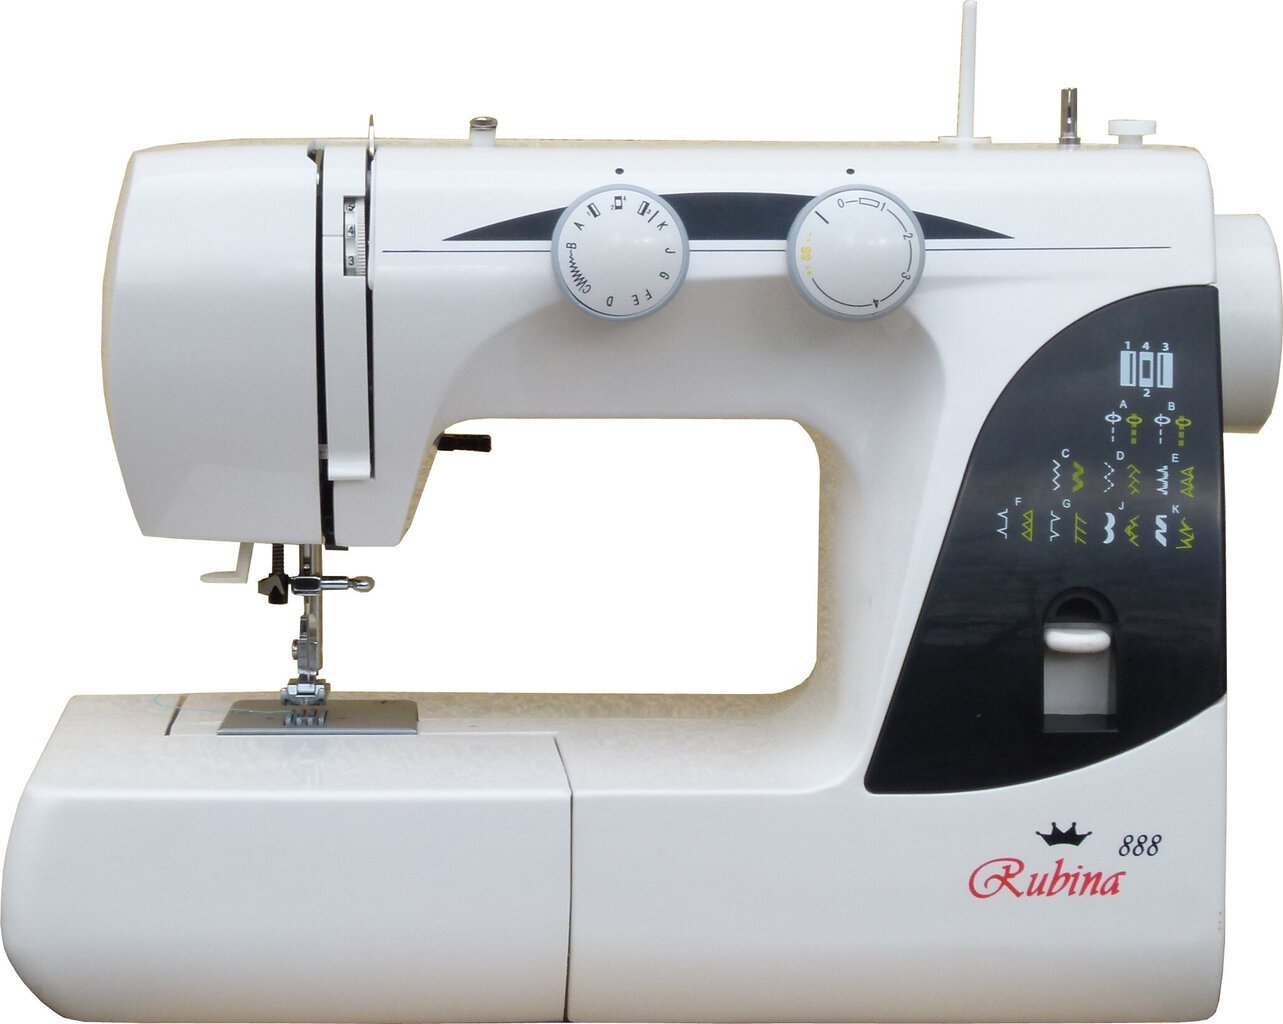 Elektromechaninė siuvimo mašina Rubina KP888 kaina | pigu.lt